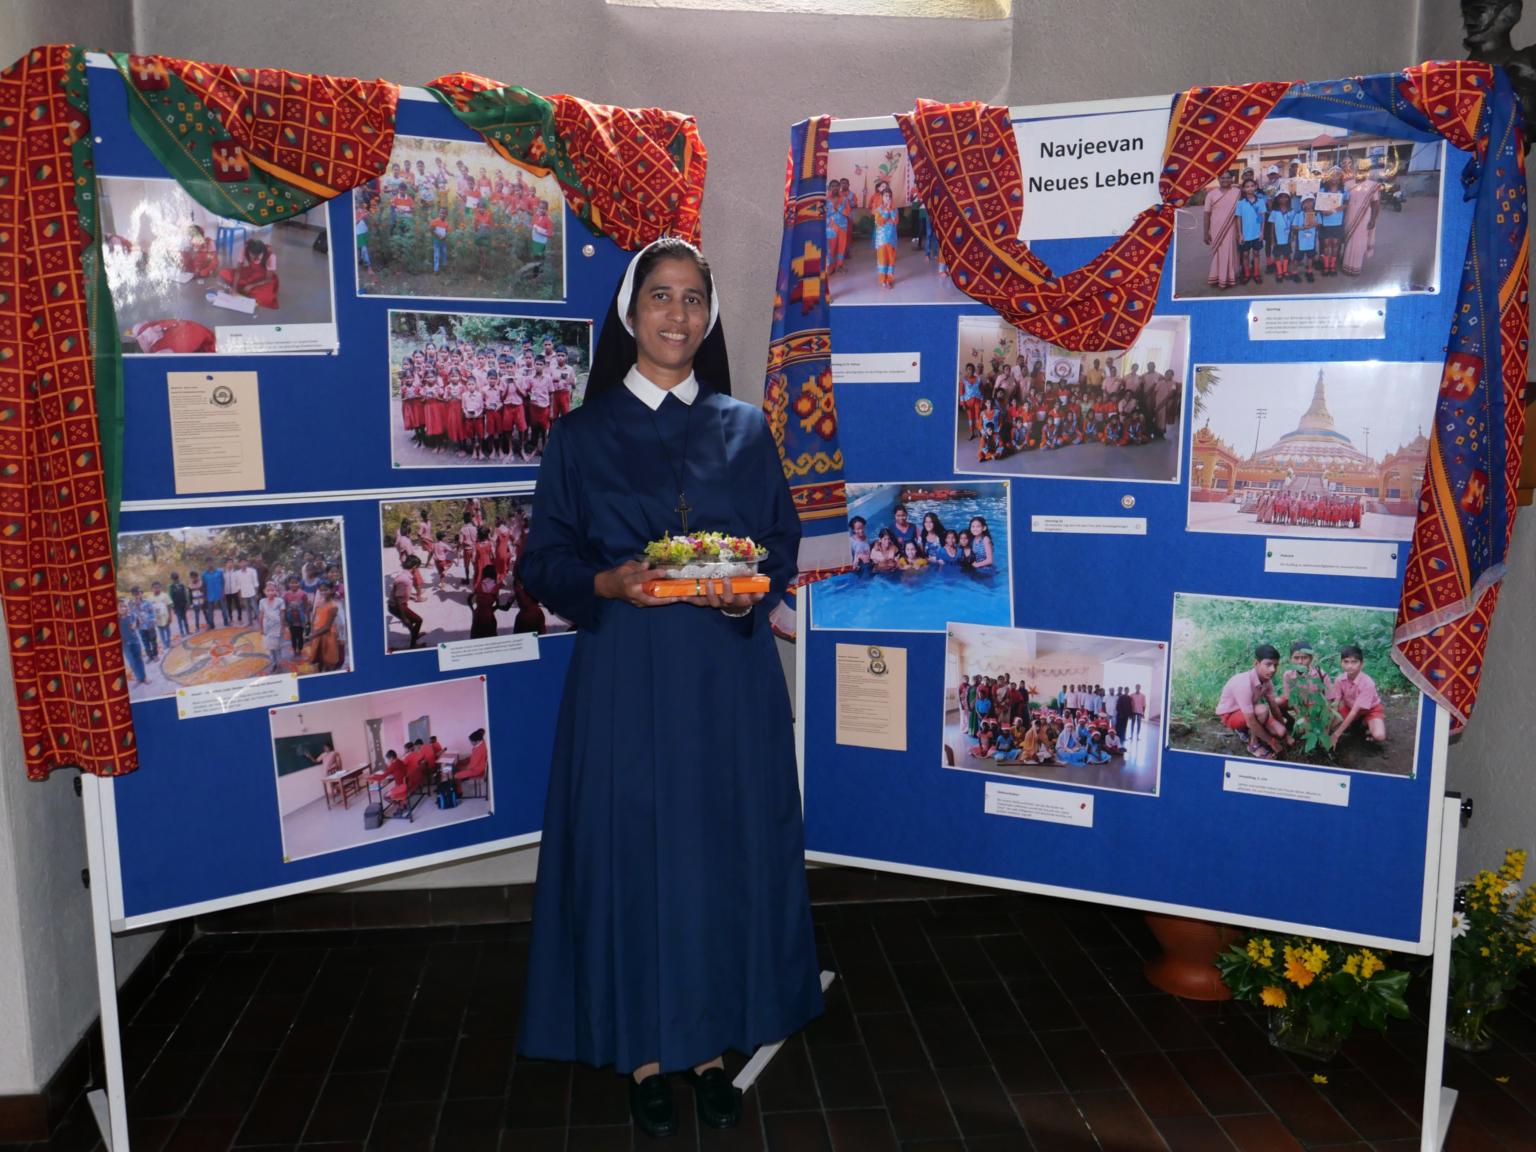 Schwester Leny Luvies freute sich am Tag ihres Professjubiläums besonders über die Unterstützung der Schule ihres Ordens. (c) Stefanie Rieck